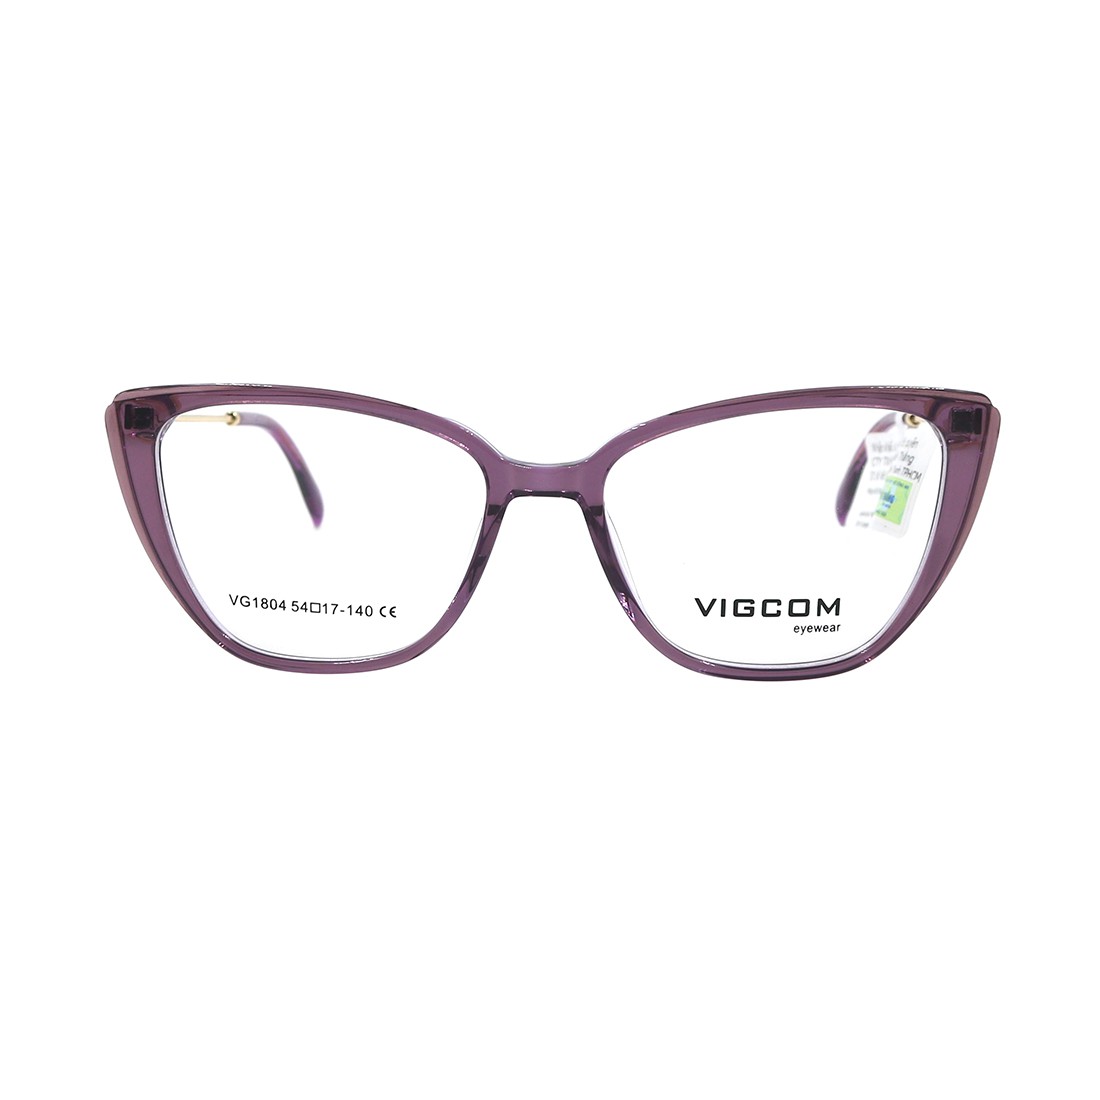 Gọng kính chính hãng Vigcom VG1804